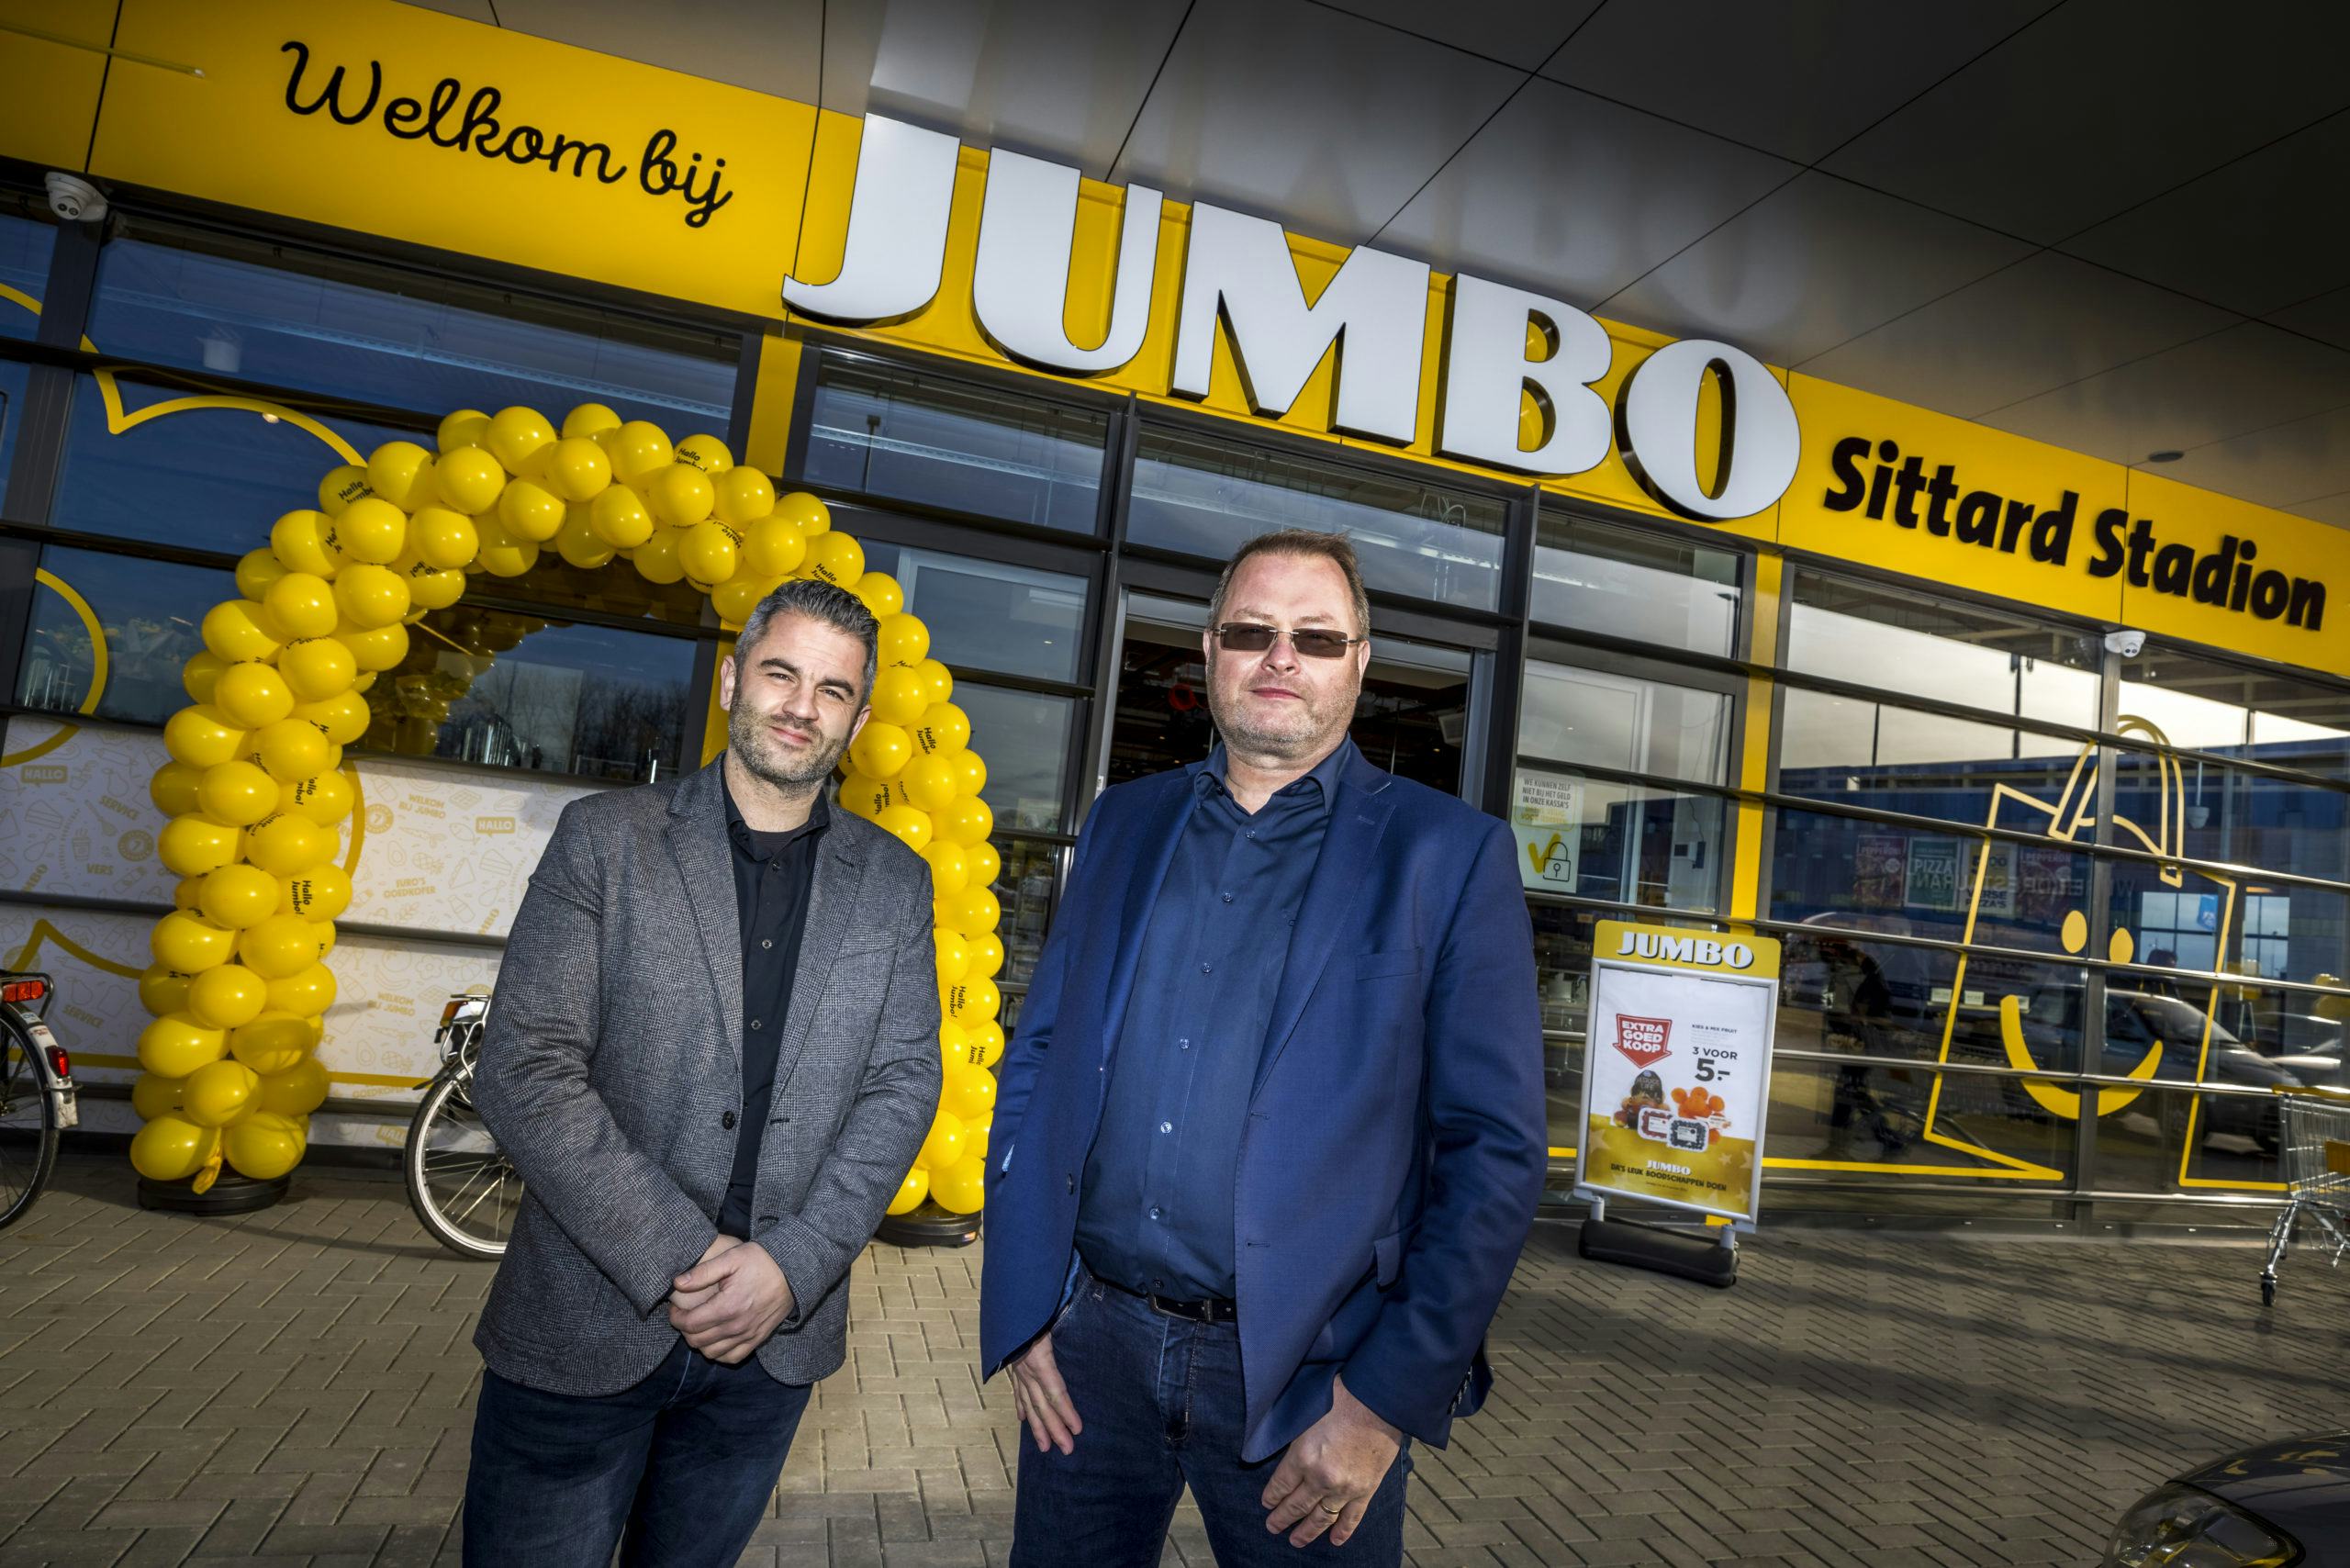  Ondernemers Thijs Hetterscheid en Herman Huirne voor hun Jumbo Sittard Stadion. Foto: Marcel van Hoorn.